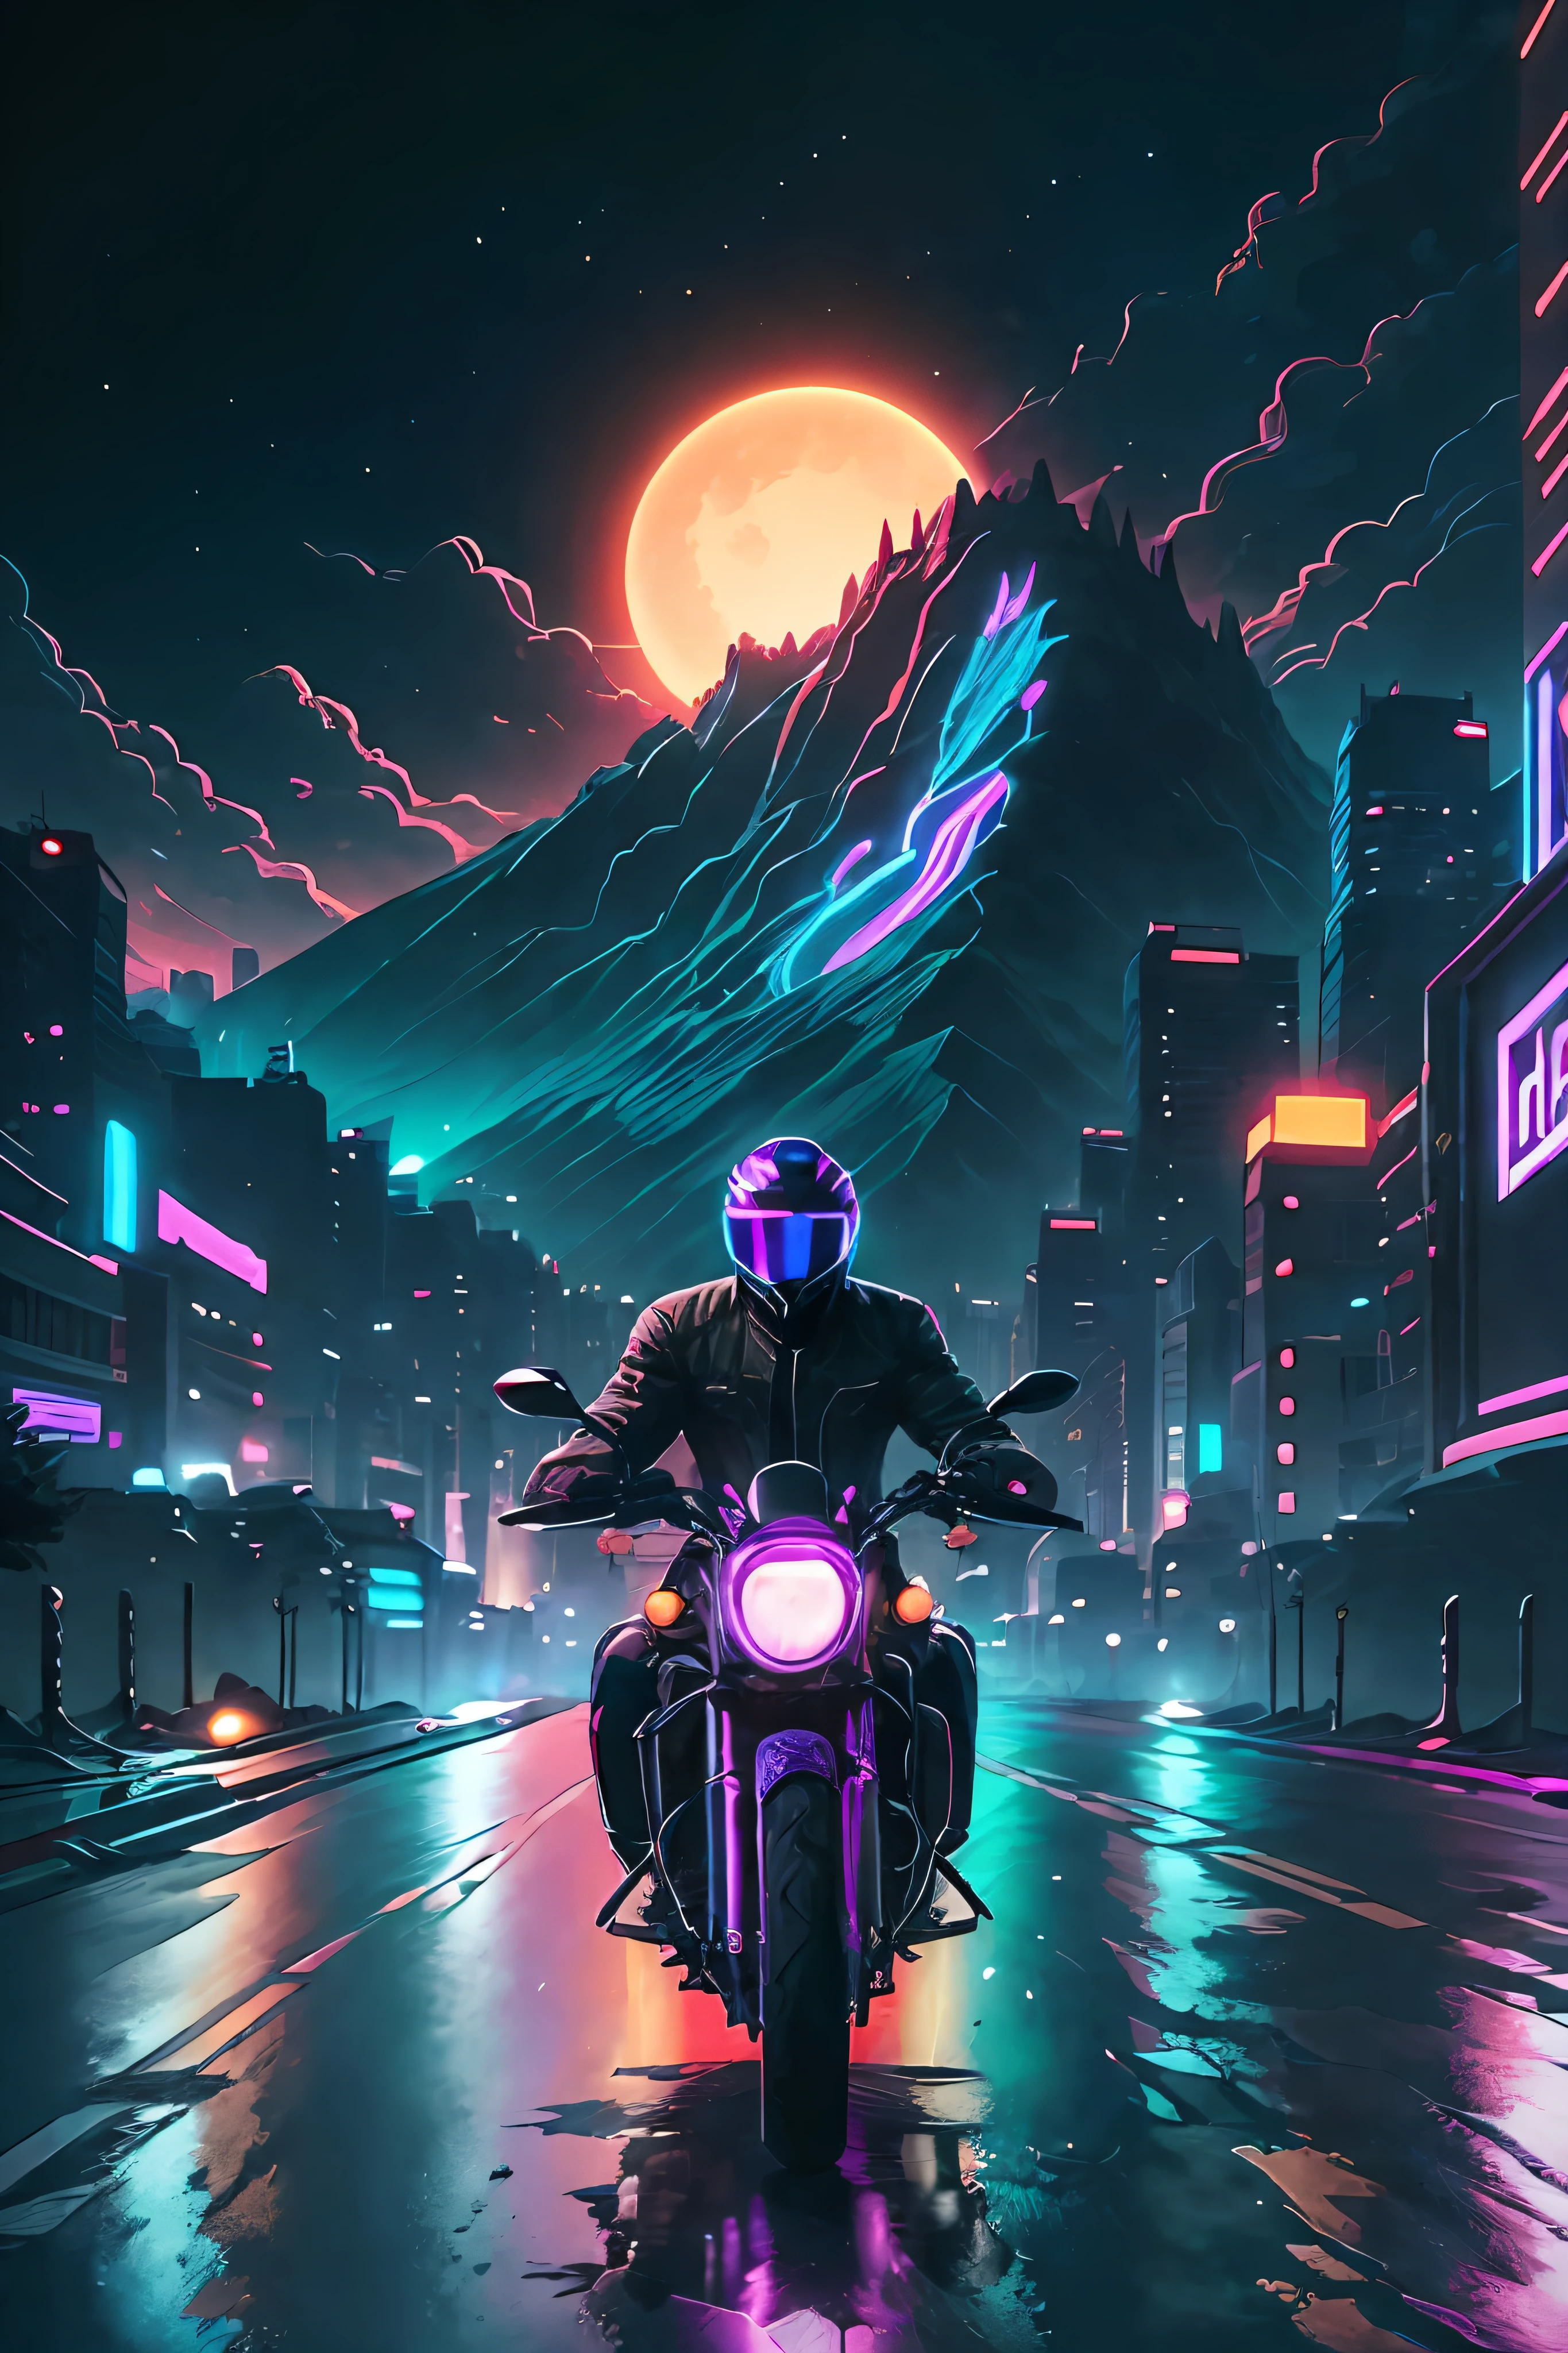 Añade un hombre en una motocicleta con microondas.. ciudad, auto, camino,  luces de neón moradas, sol, montaña, 
(Obra maestra,detallado,alta resolución),